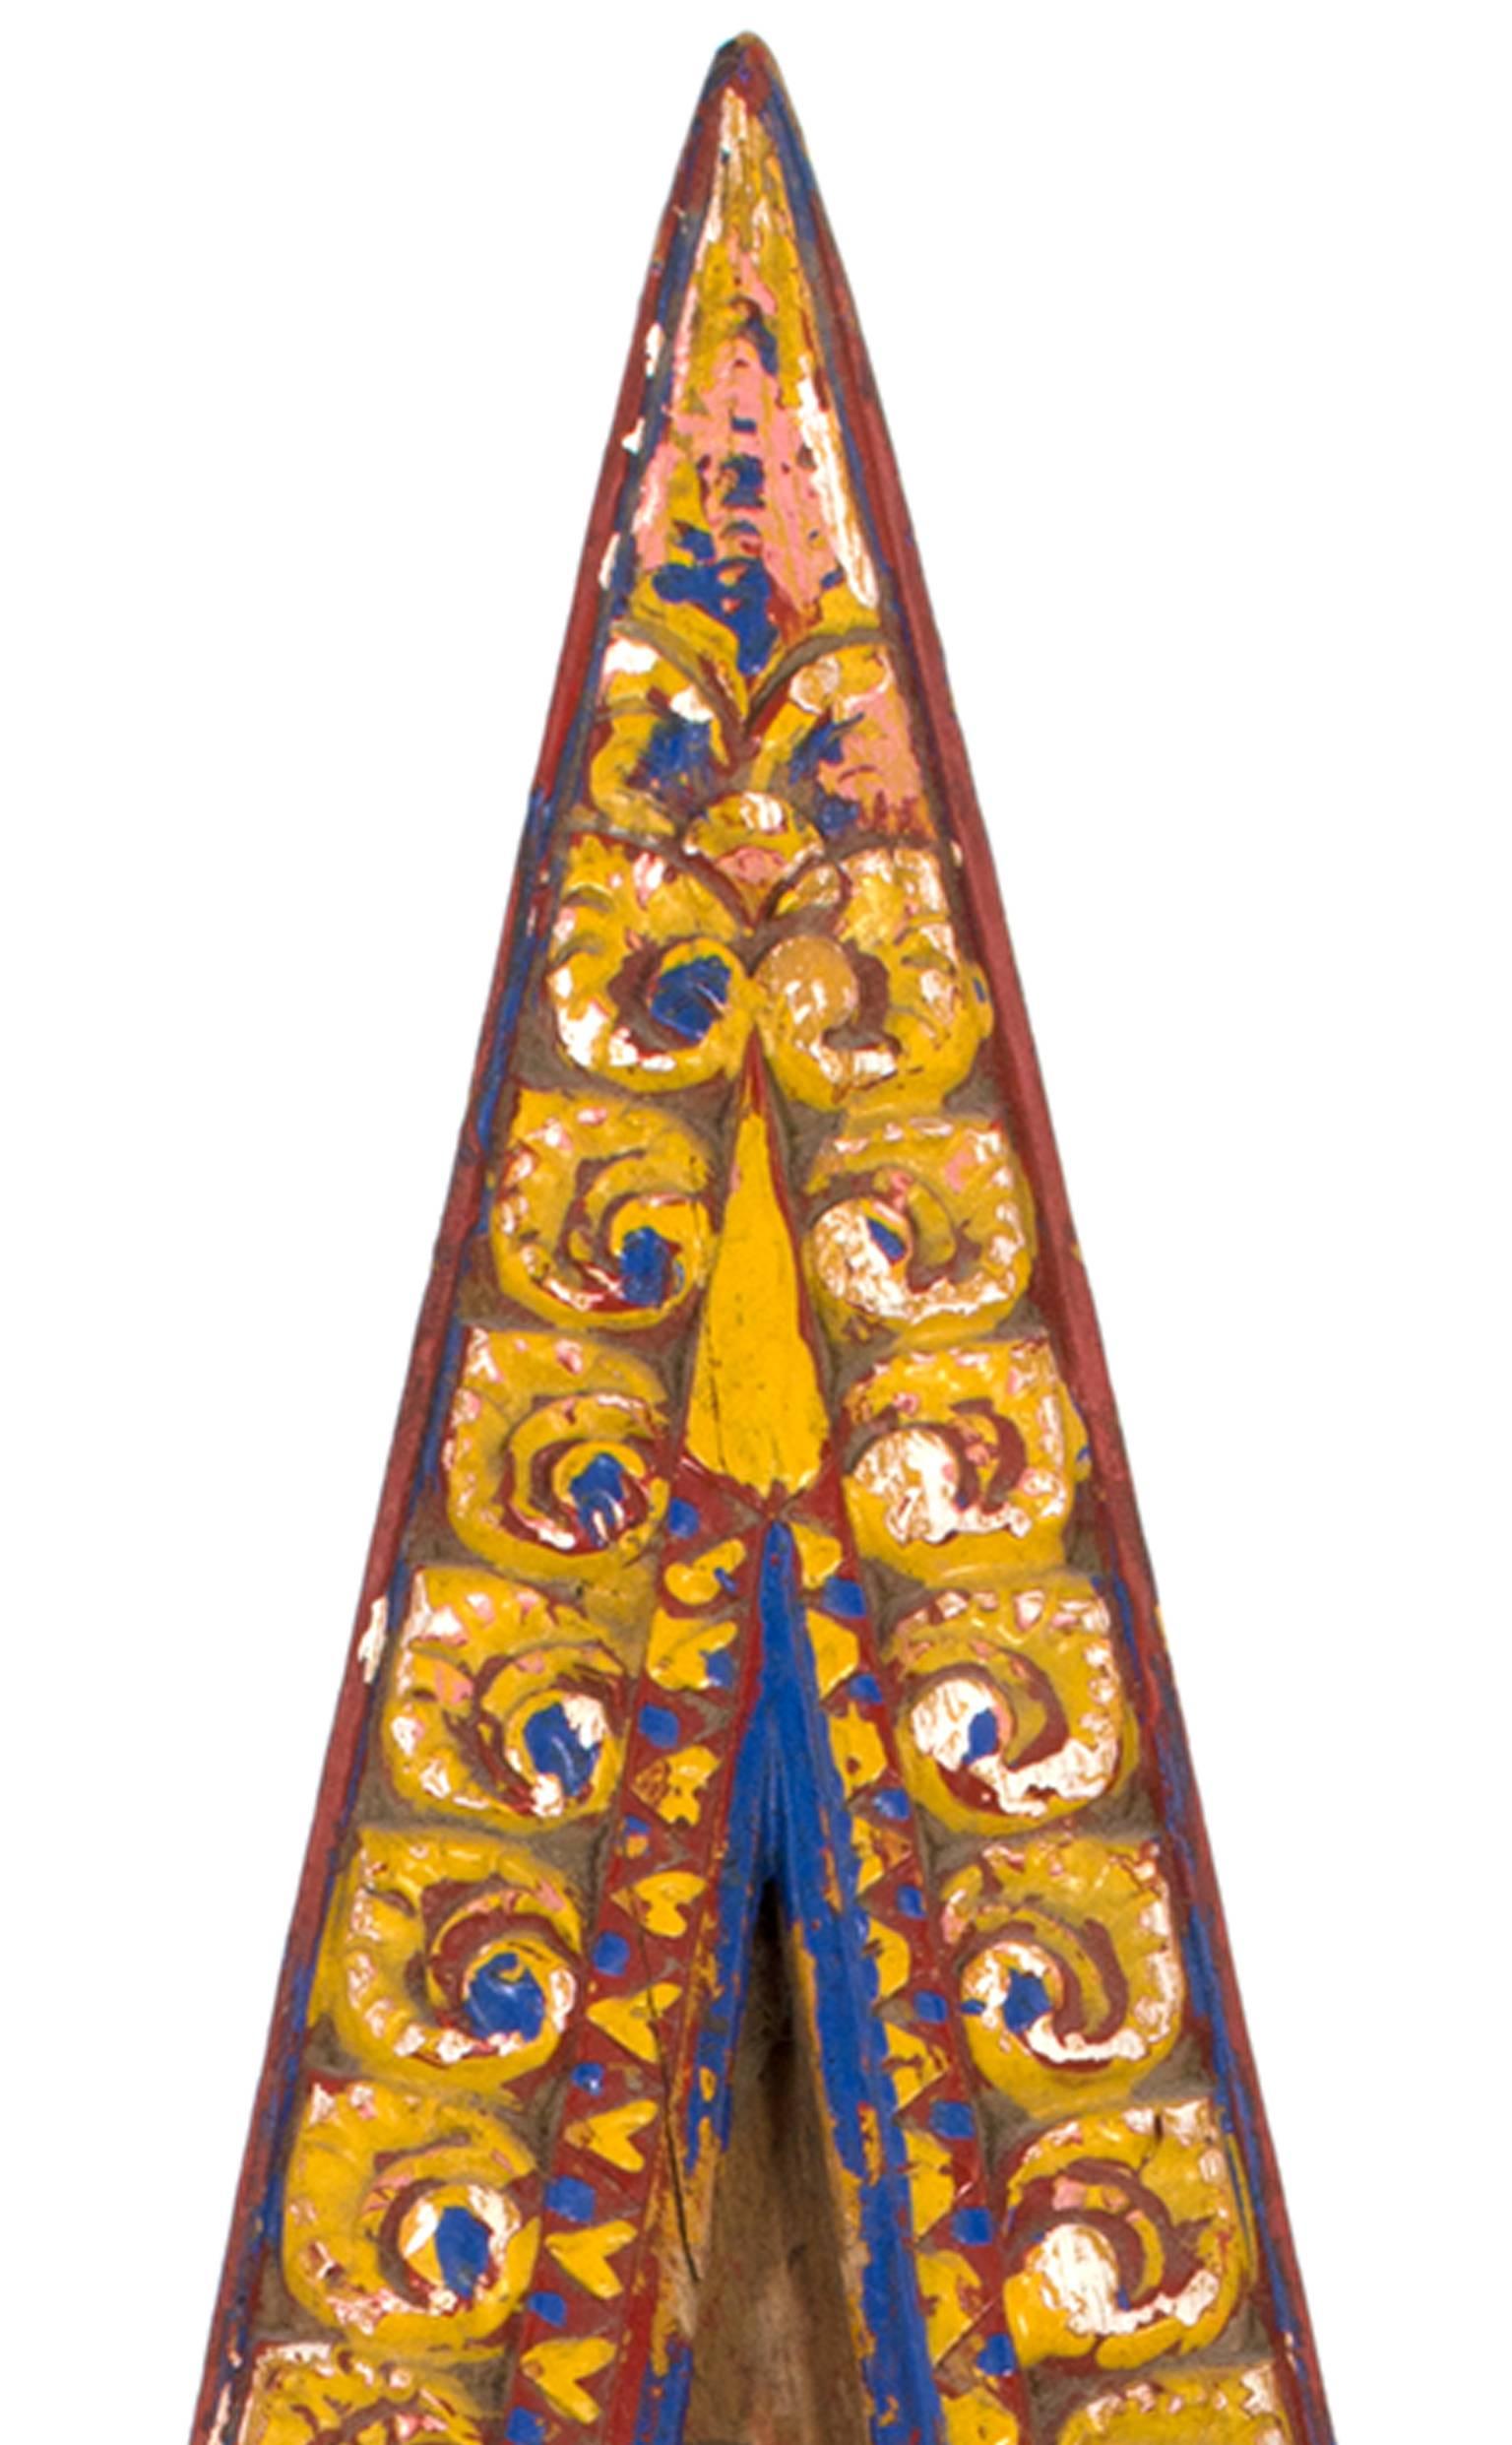  Plateau en bois triangulaire indonsien , peint en jaune, bleu et rouge  - Artisanat Sculpture par Unknown